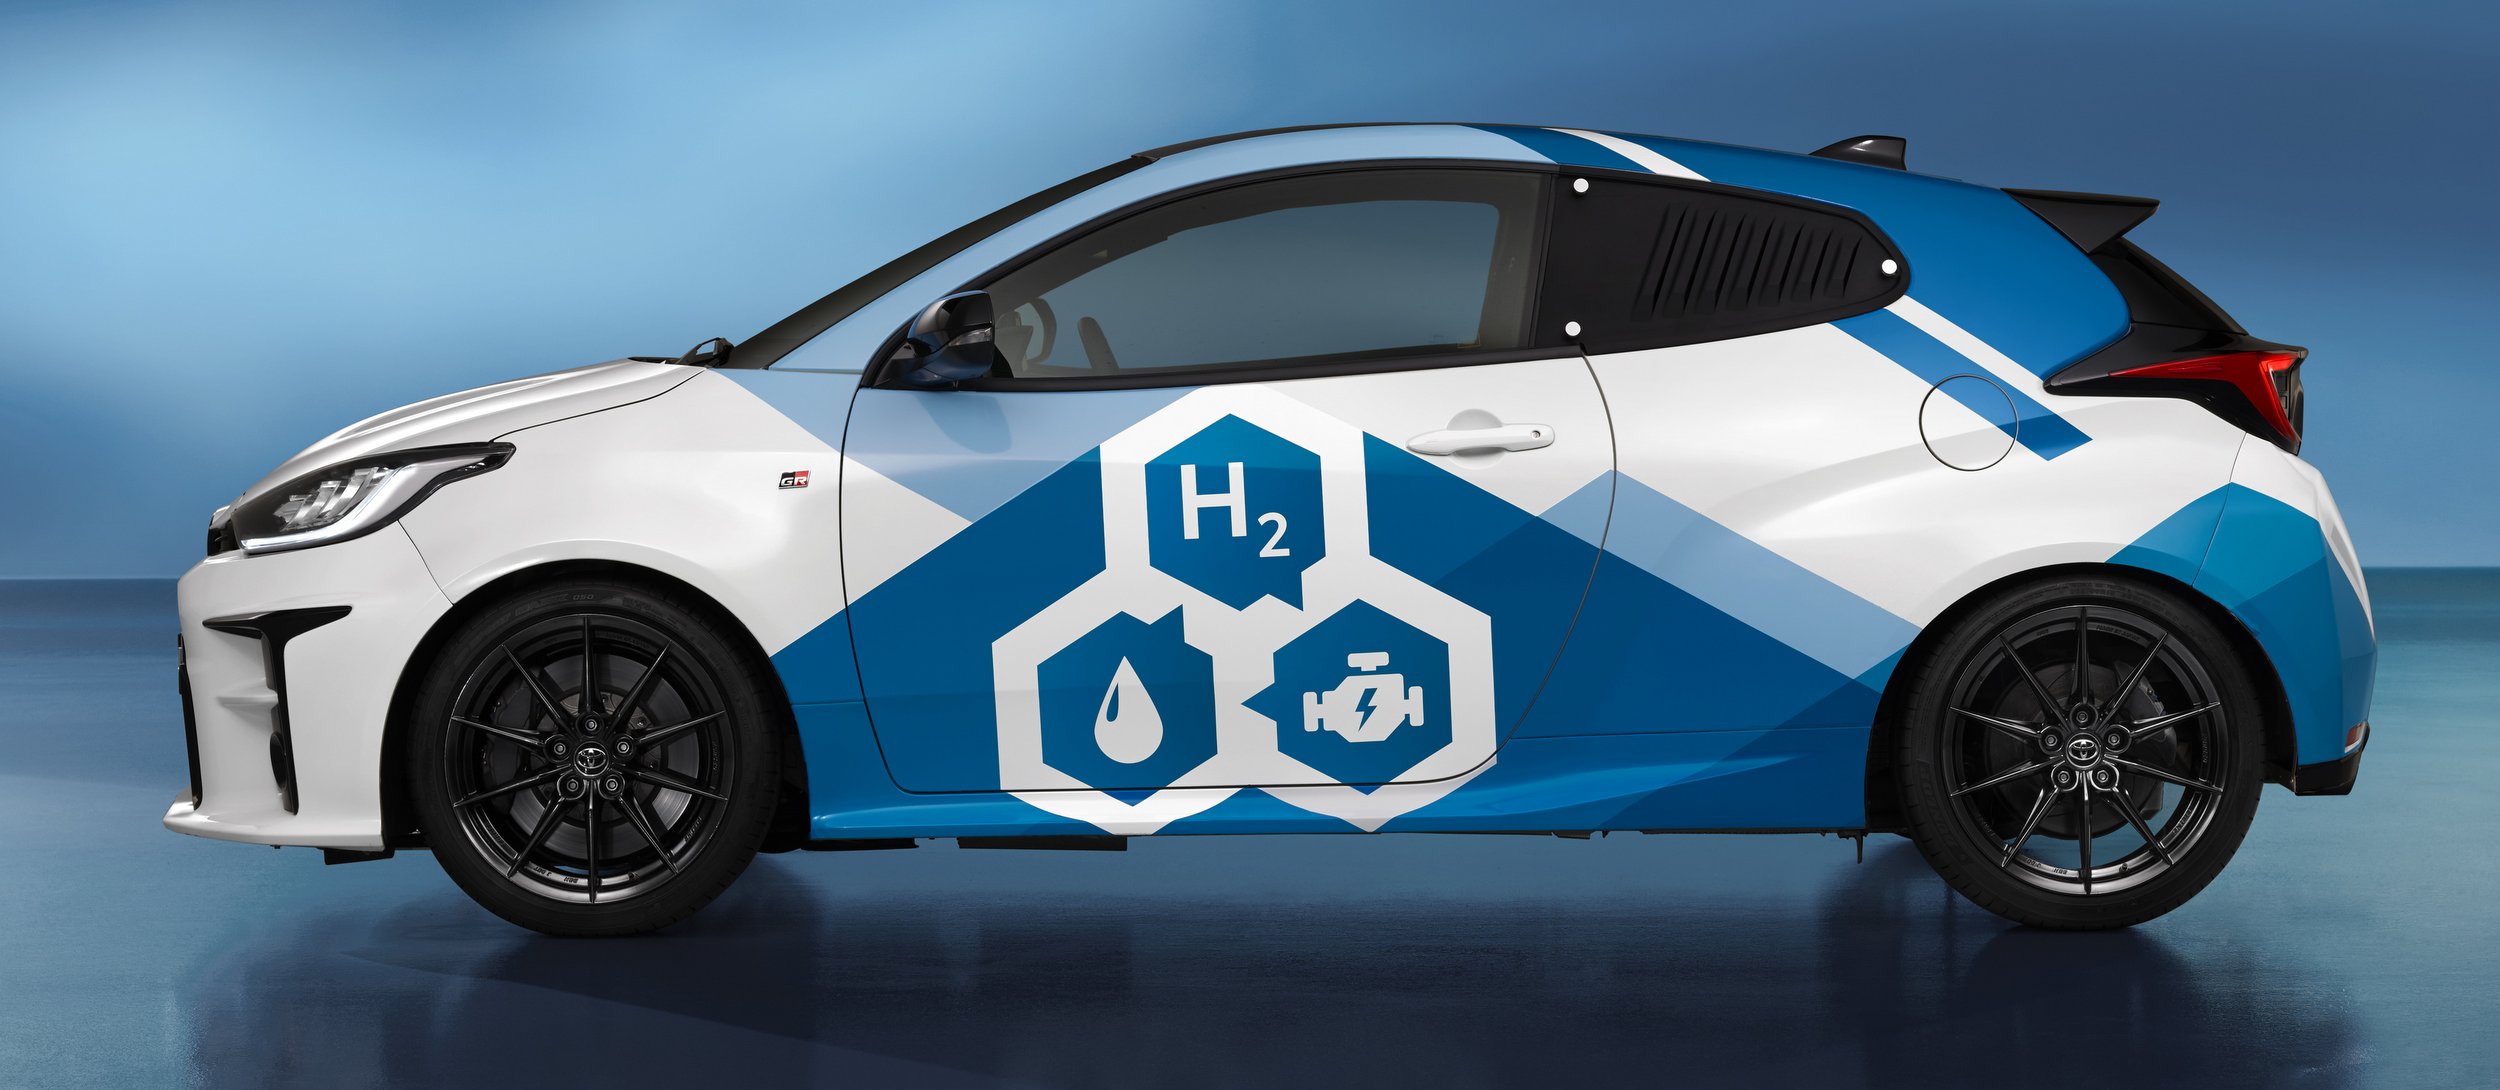 Benzin helyett hidrogén hajtja ezt a sportkocsit 8